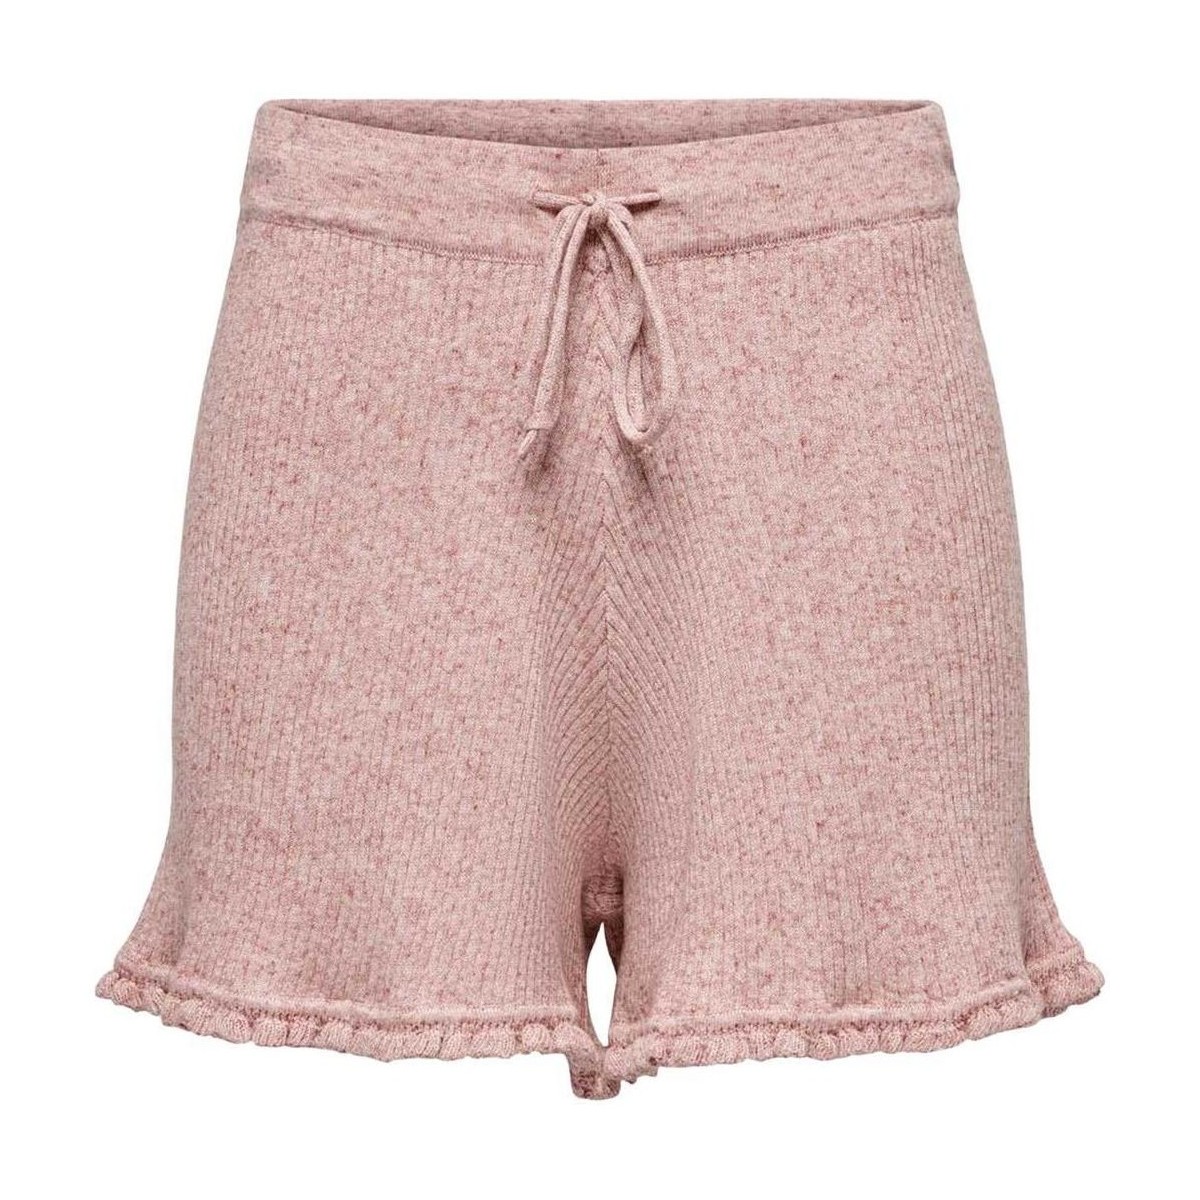 Textiel Dames Korte broeken / Bermuda's Only  Roze